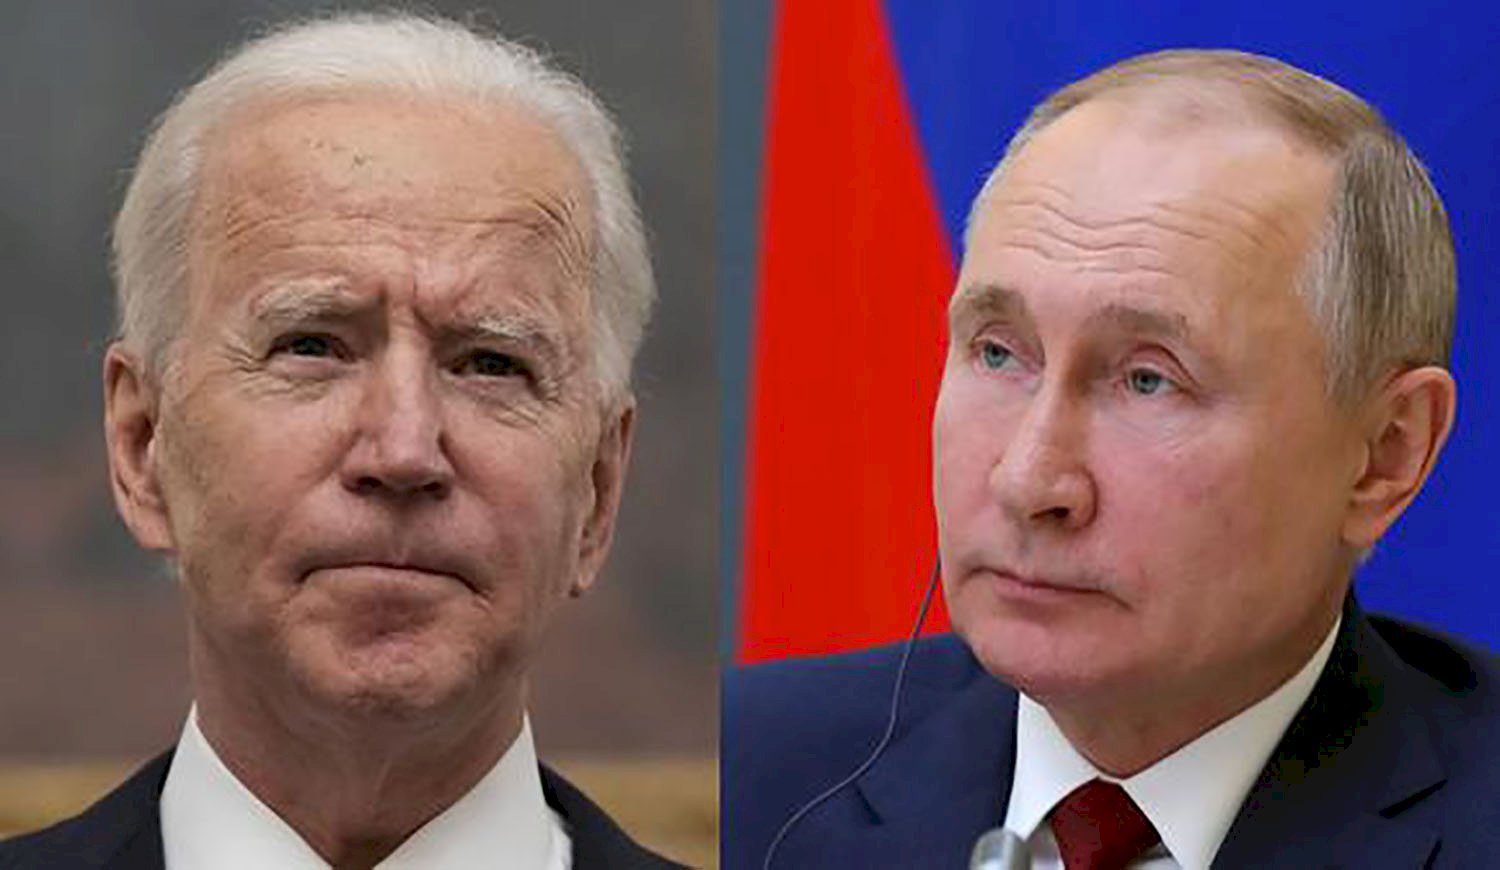 Biden anuncia sanciones contra oligarcas y bancos rusos y envío de soldados a países bálticos